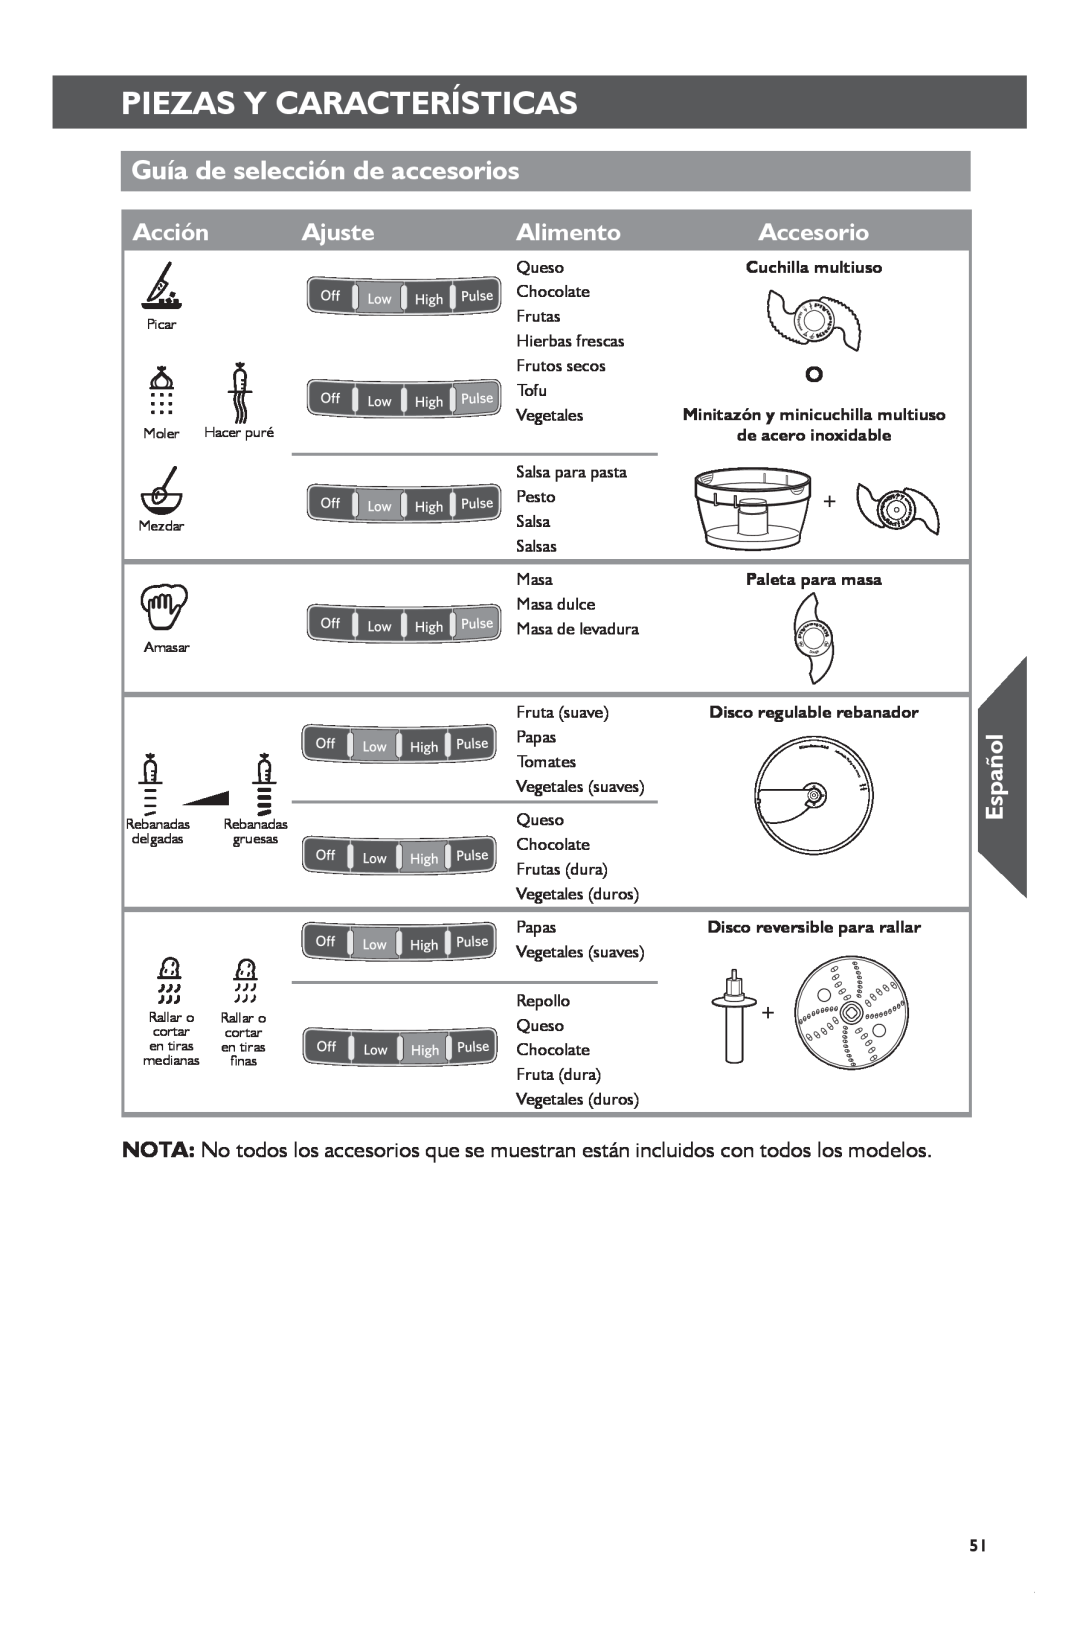 KitchenAid KFP1133 Guía de selección de accesorios, Ajuste, Alimento, Acción, Piezas Y Características, Español, Accesorio 